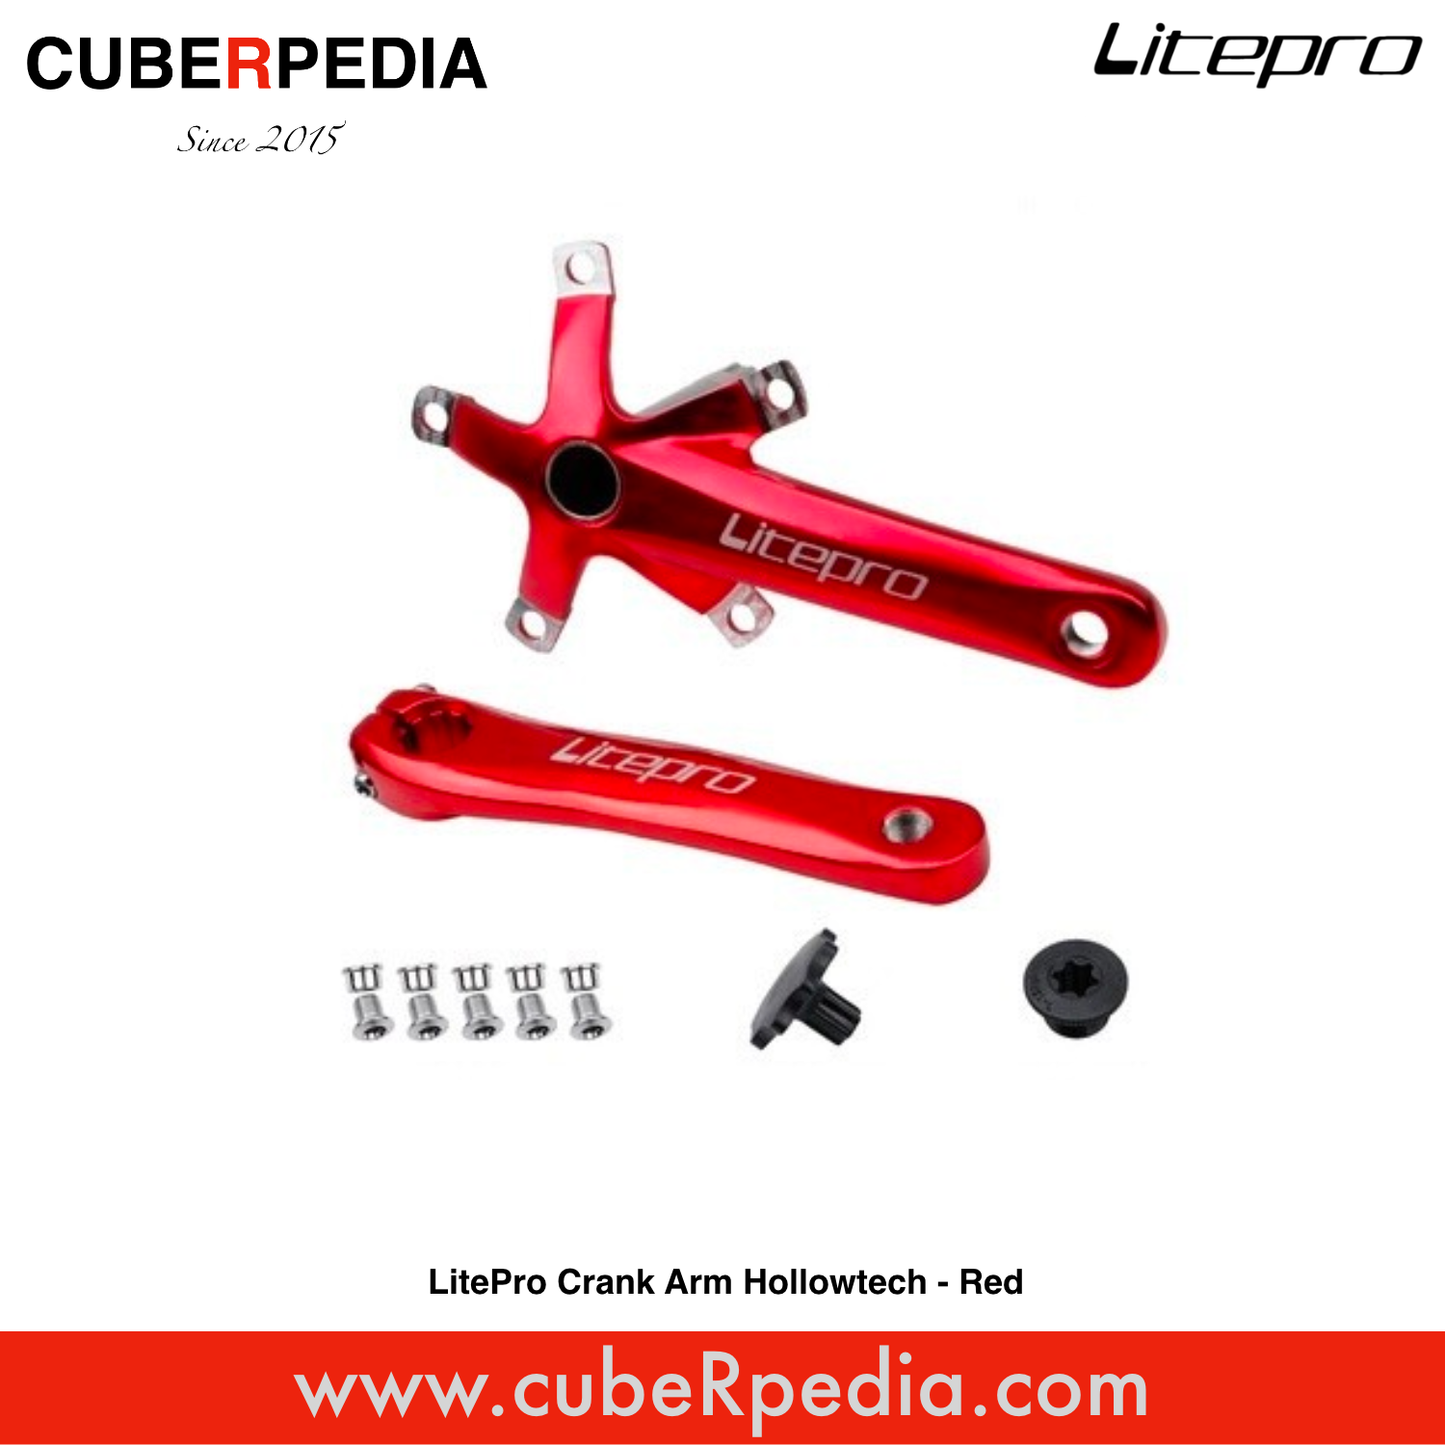 LitePro Crank Arm Hollowtech - Red